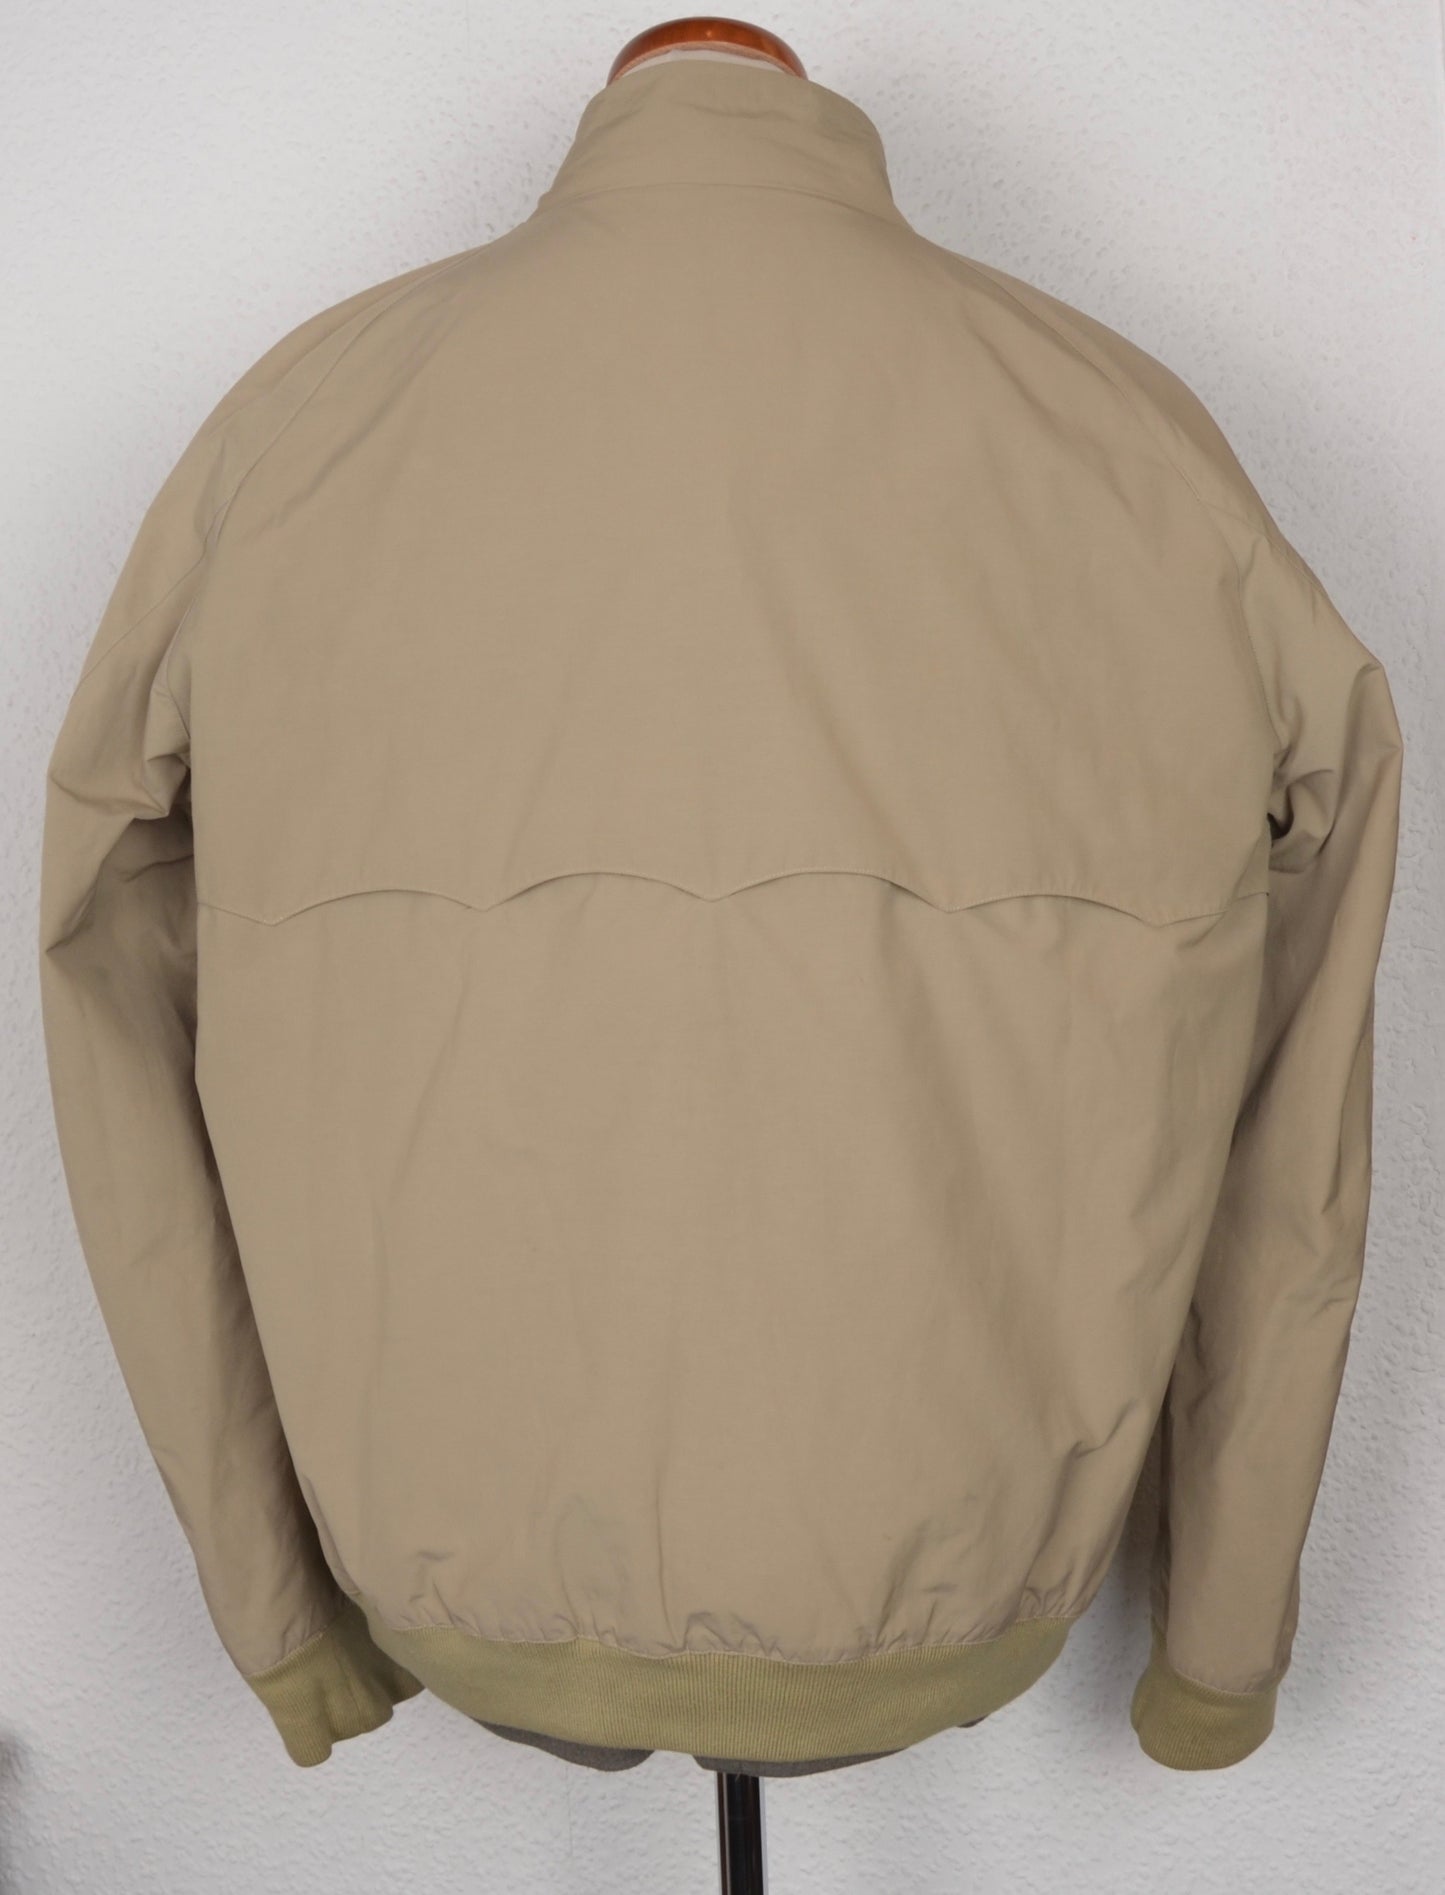 Baracuta G9 Harrington Jacket Size 48 - Tan